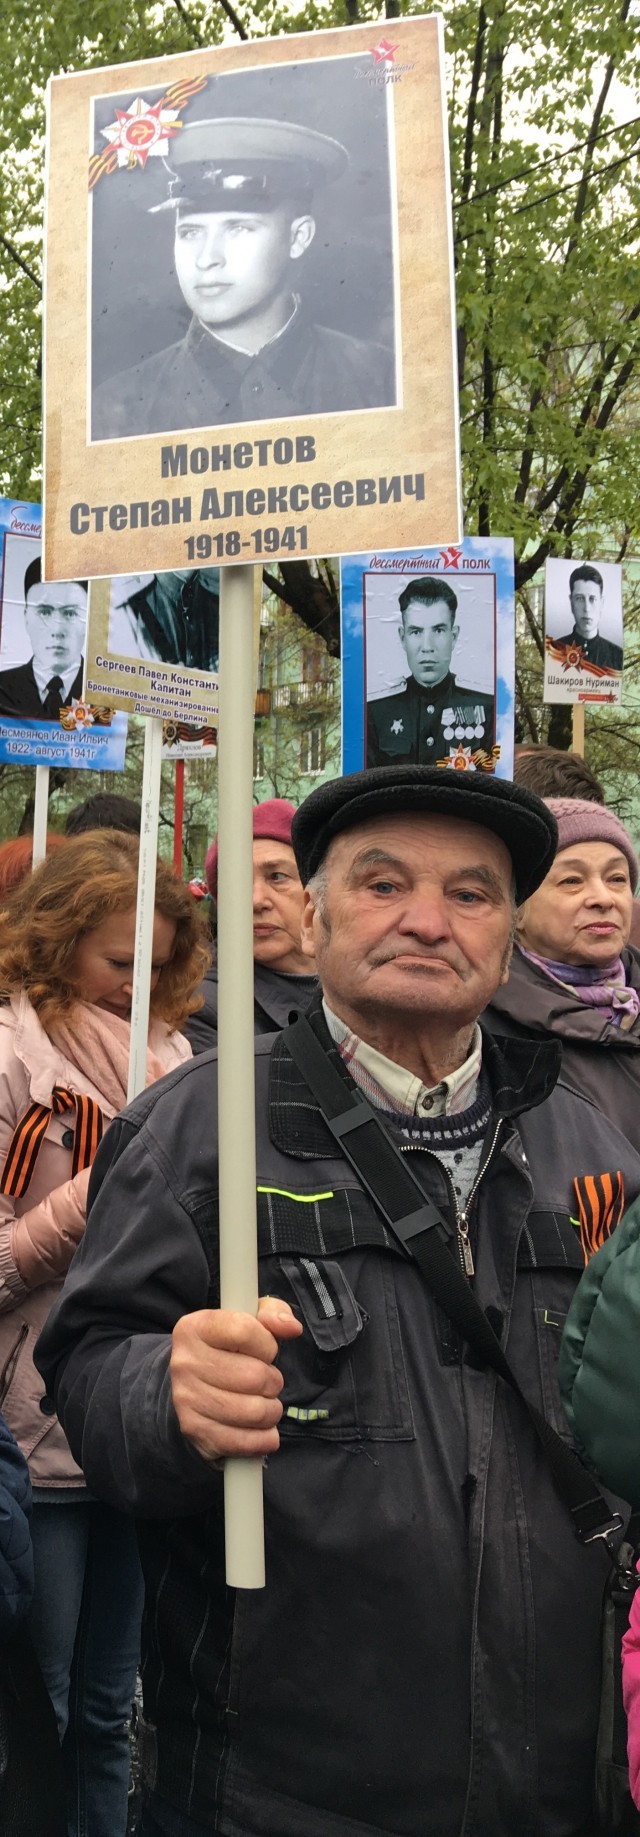 Родственники пропавшего ещё в сентябре 2017 года 79-летнего Алексея Монетова не теряют надежды, что он жив